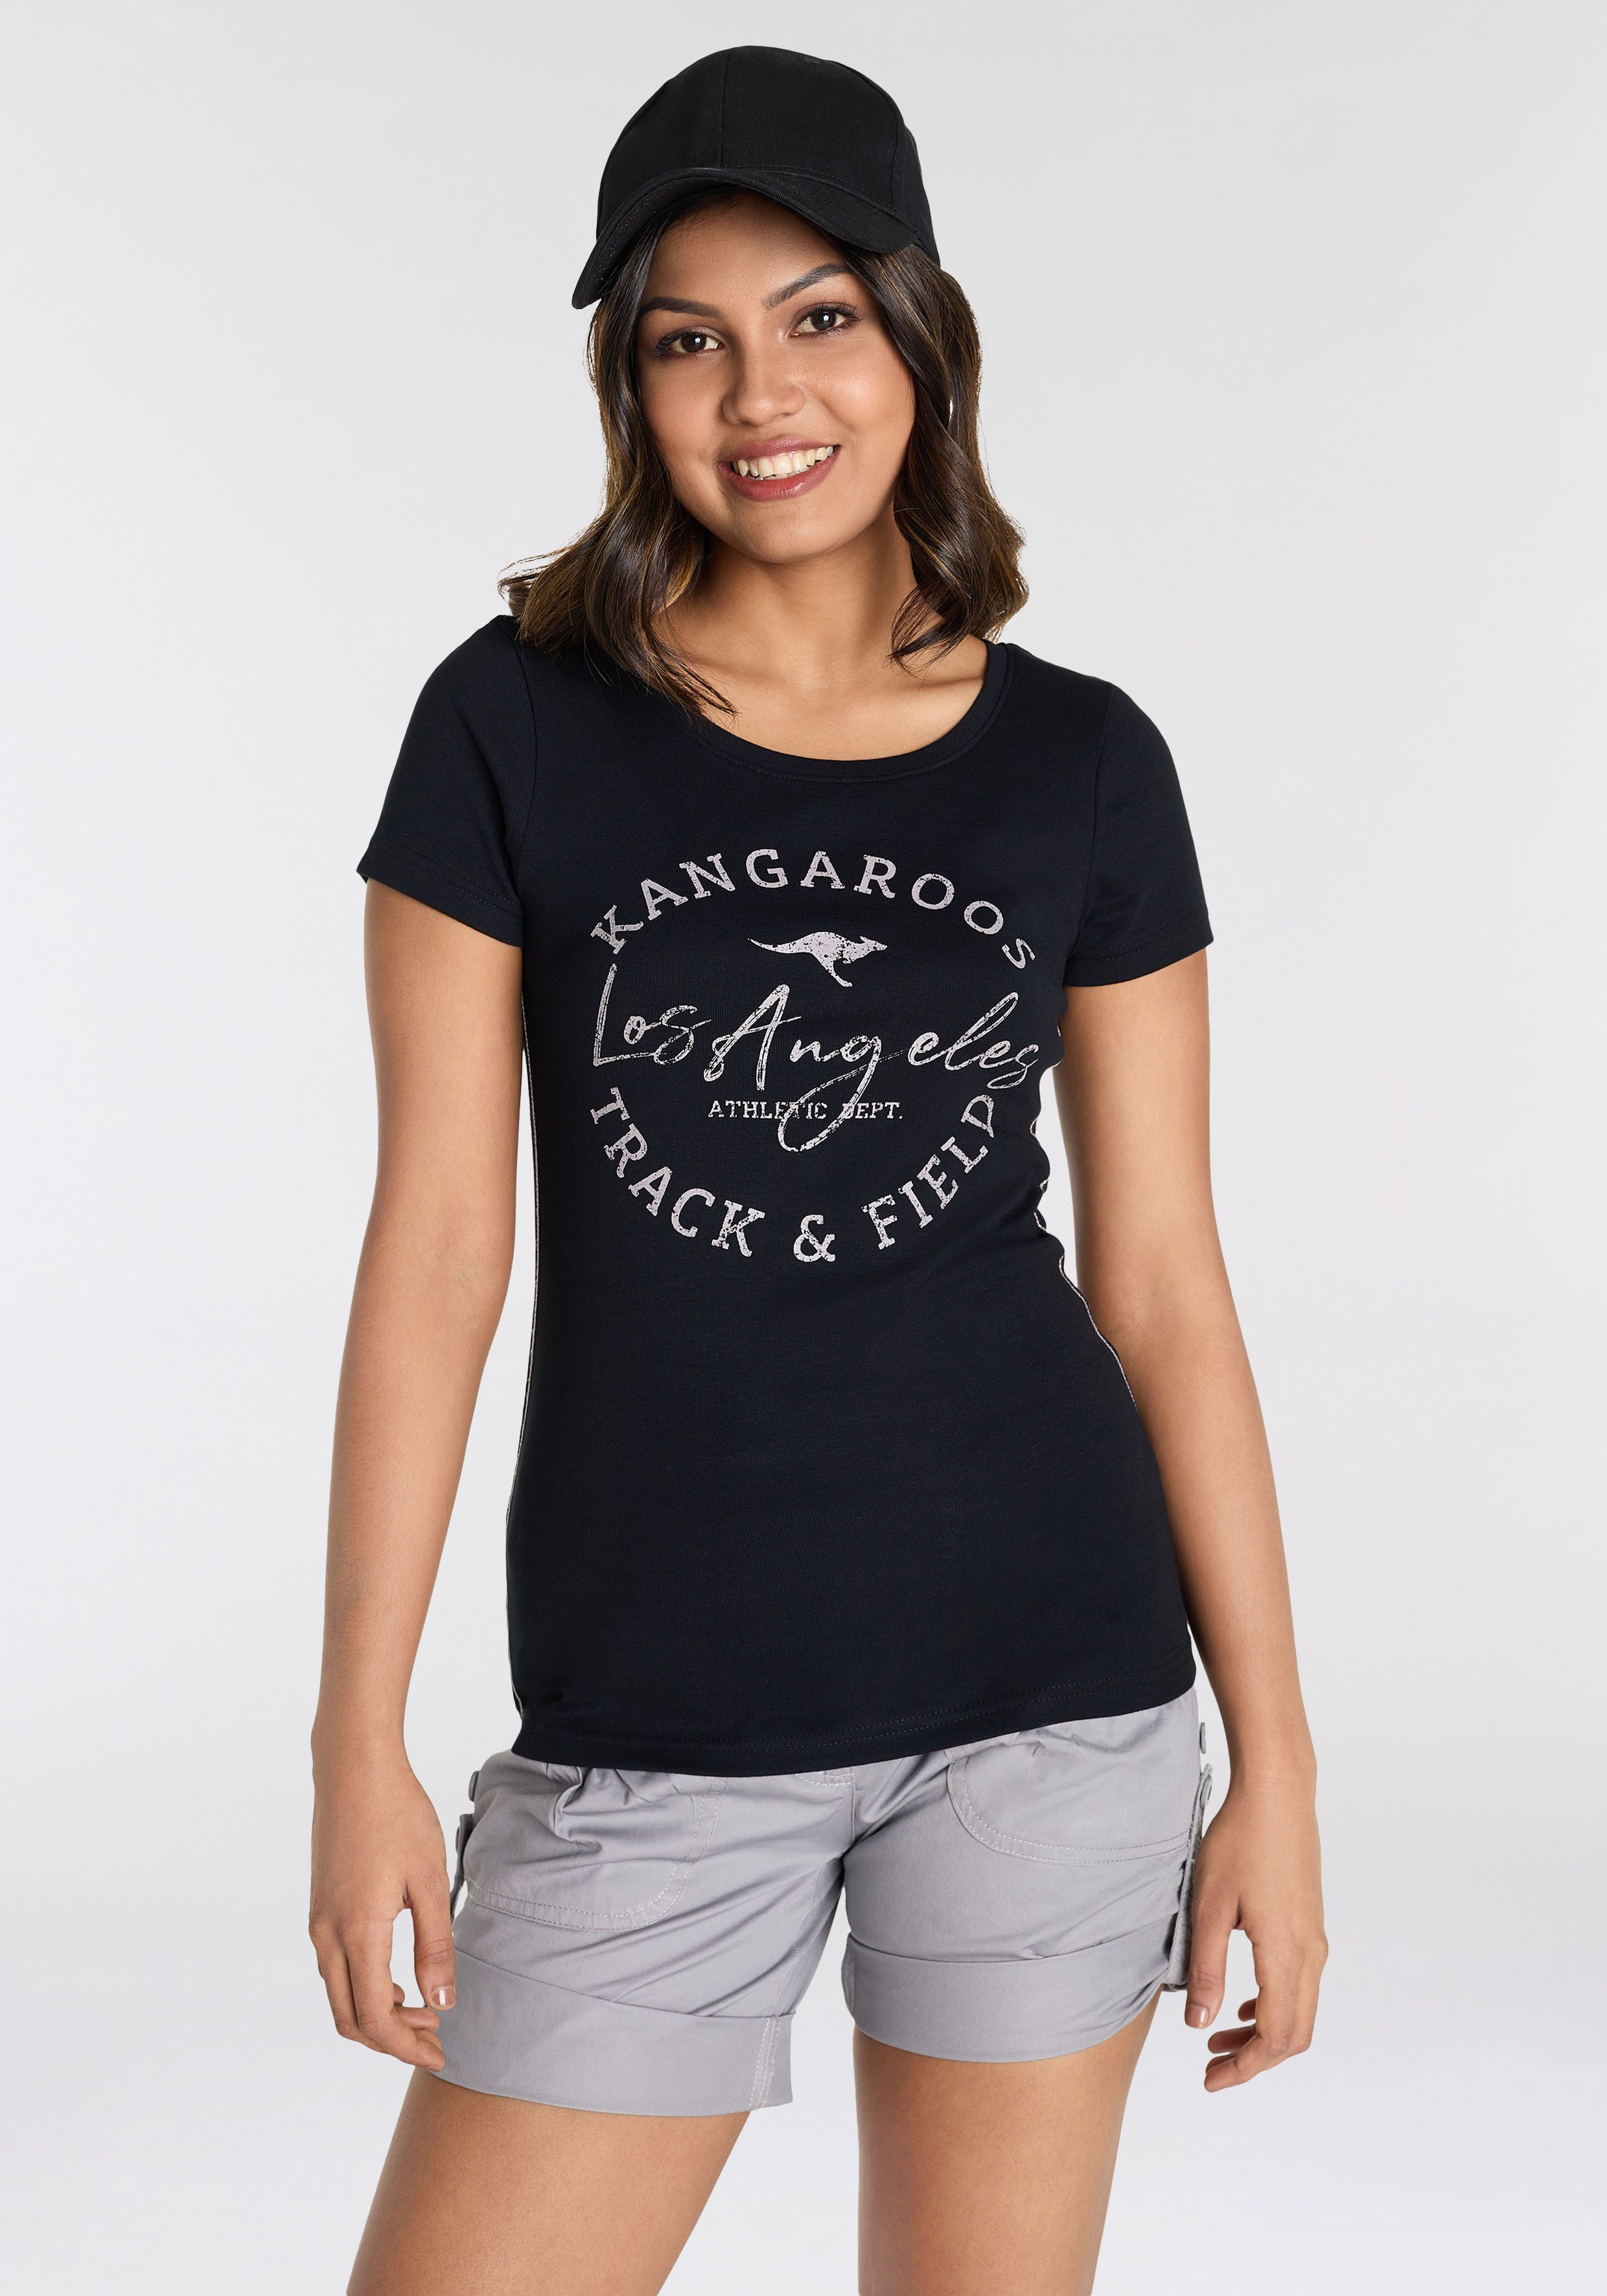 KangaROOS Print-Shirt im American-Look - NEUE FARBEN